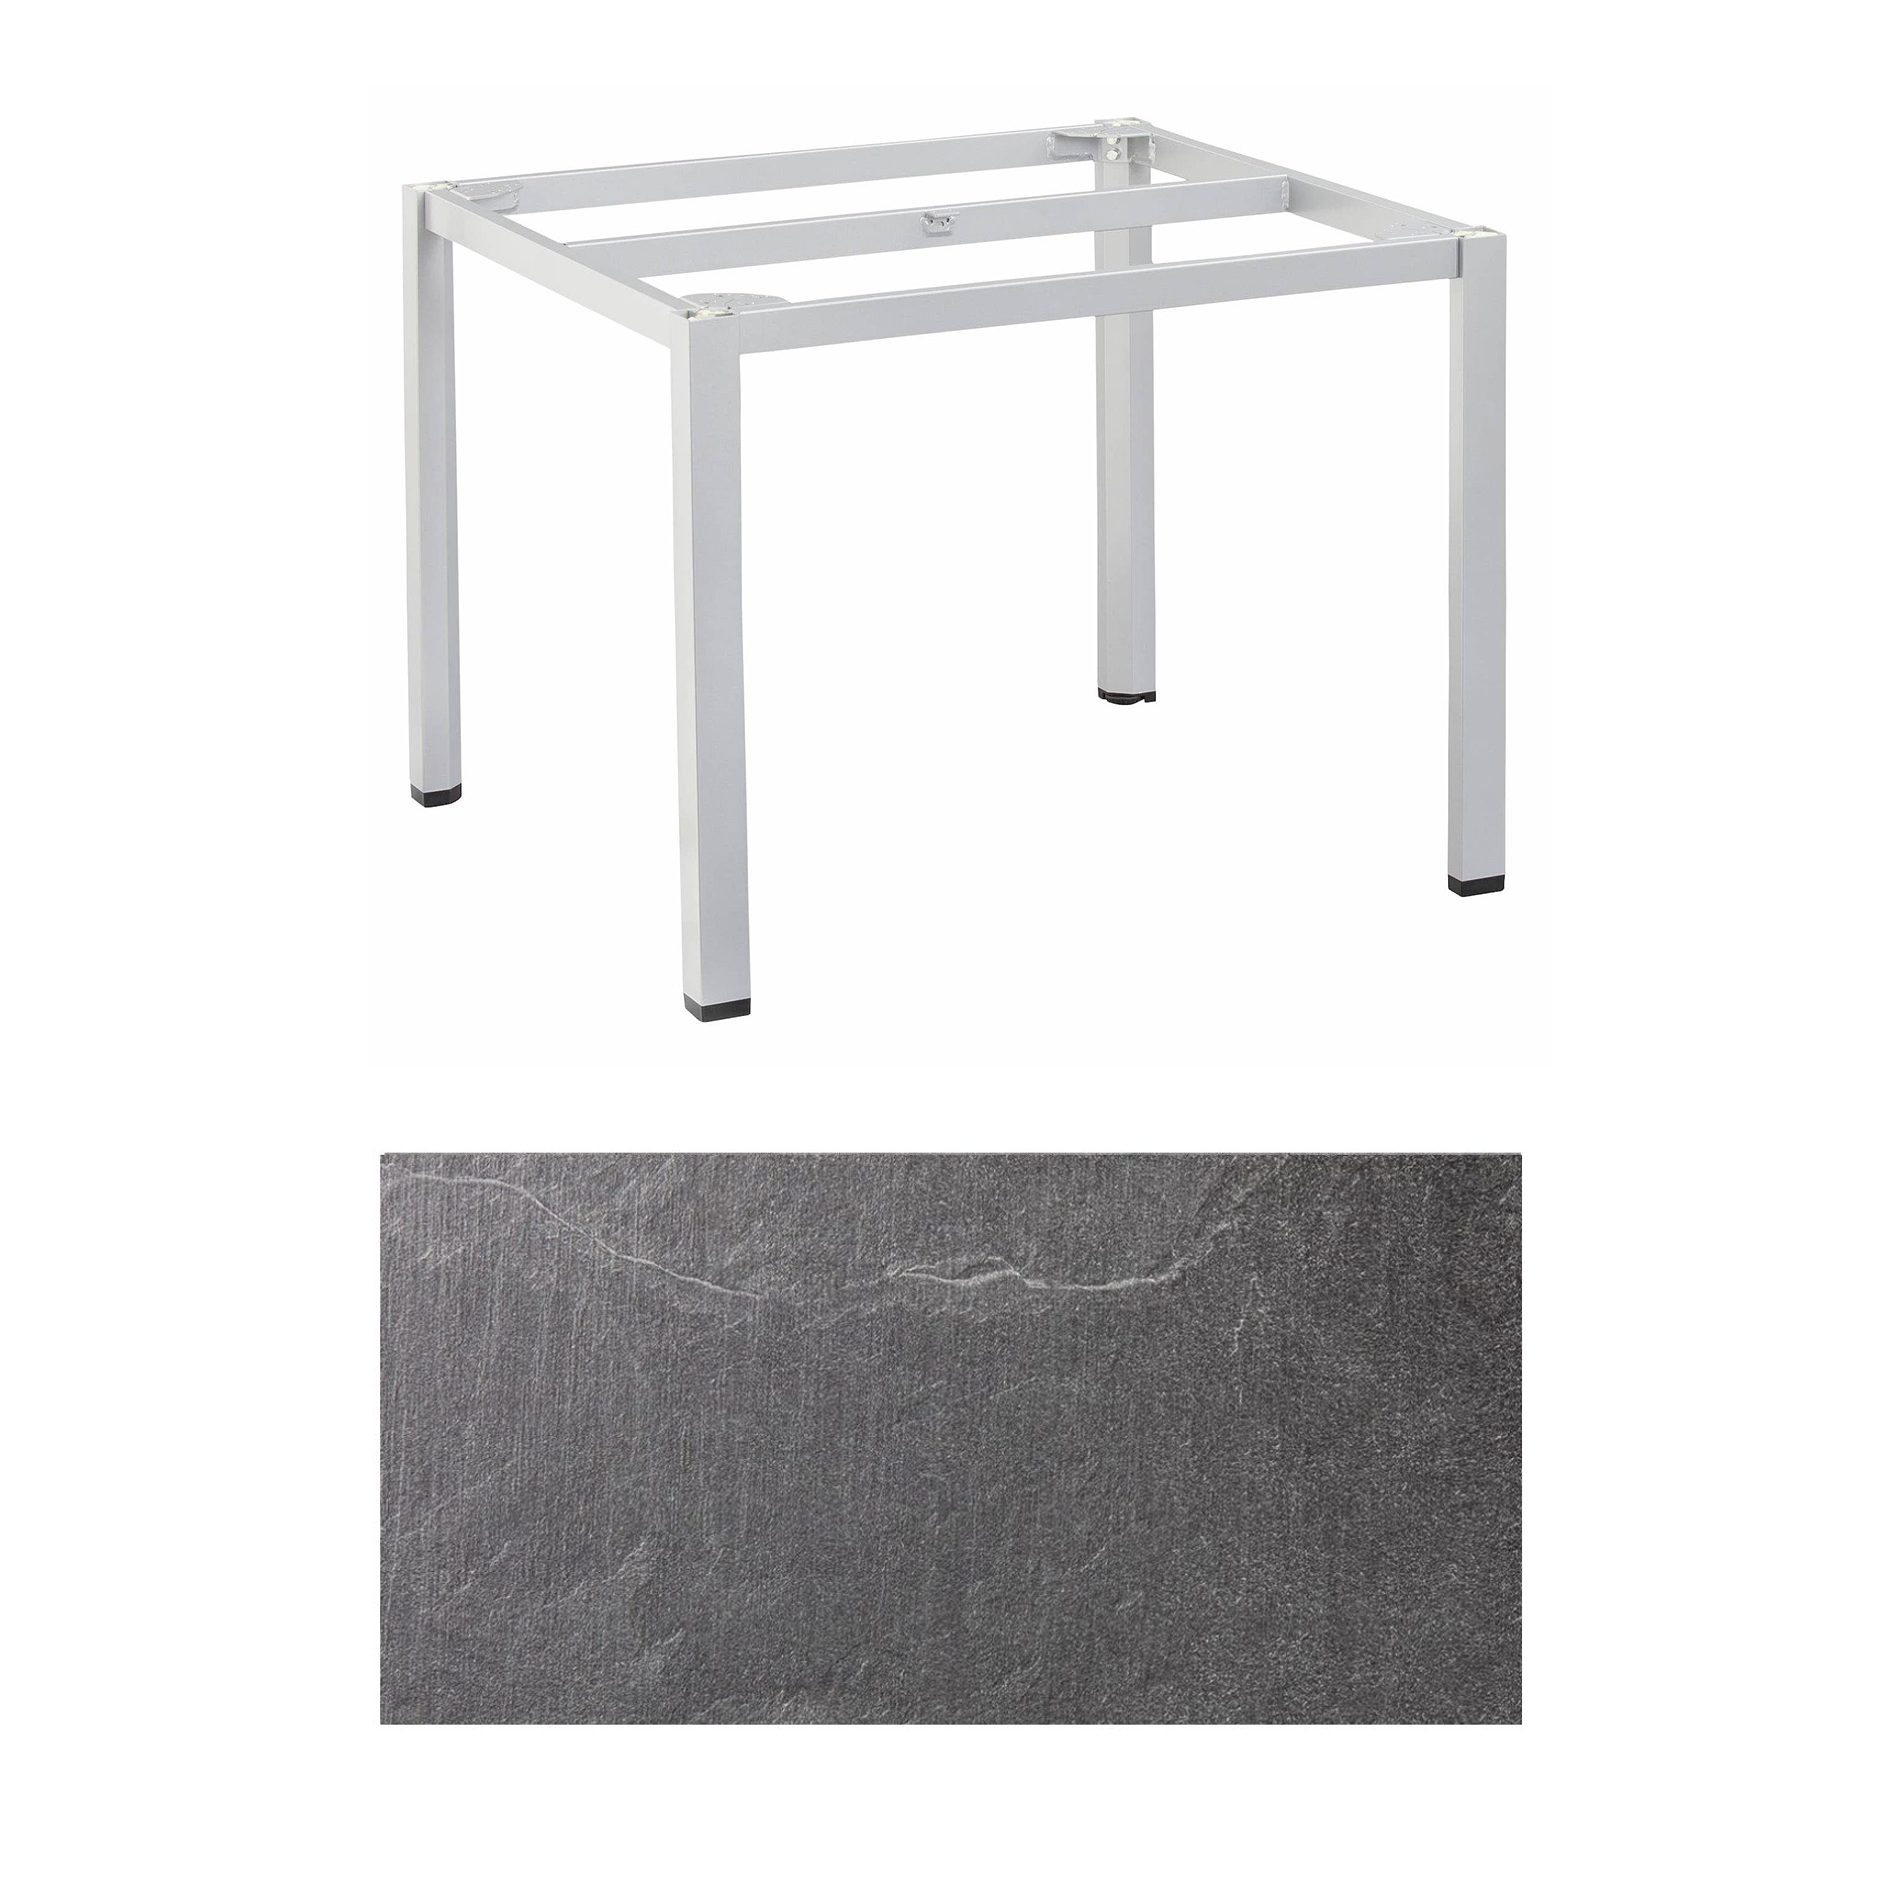 Kettler "Cubic" Tischgestell 95x95 cm, Aluminium silber mit HPL-Platte Jura anthrazit